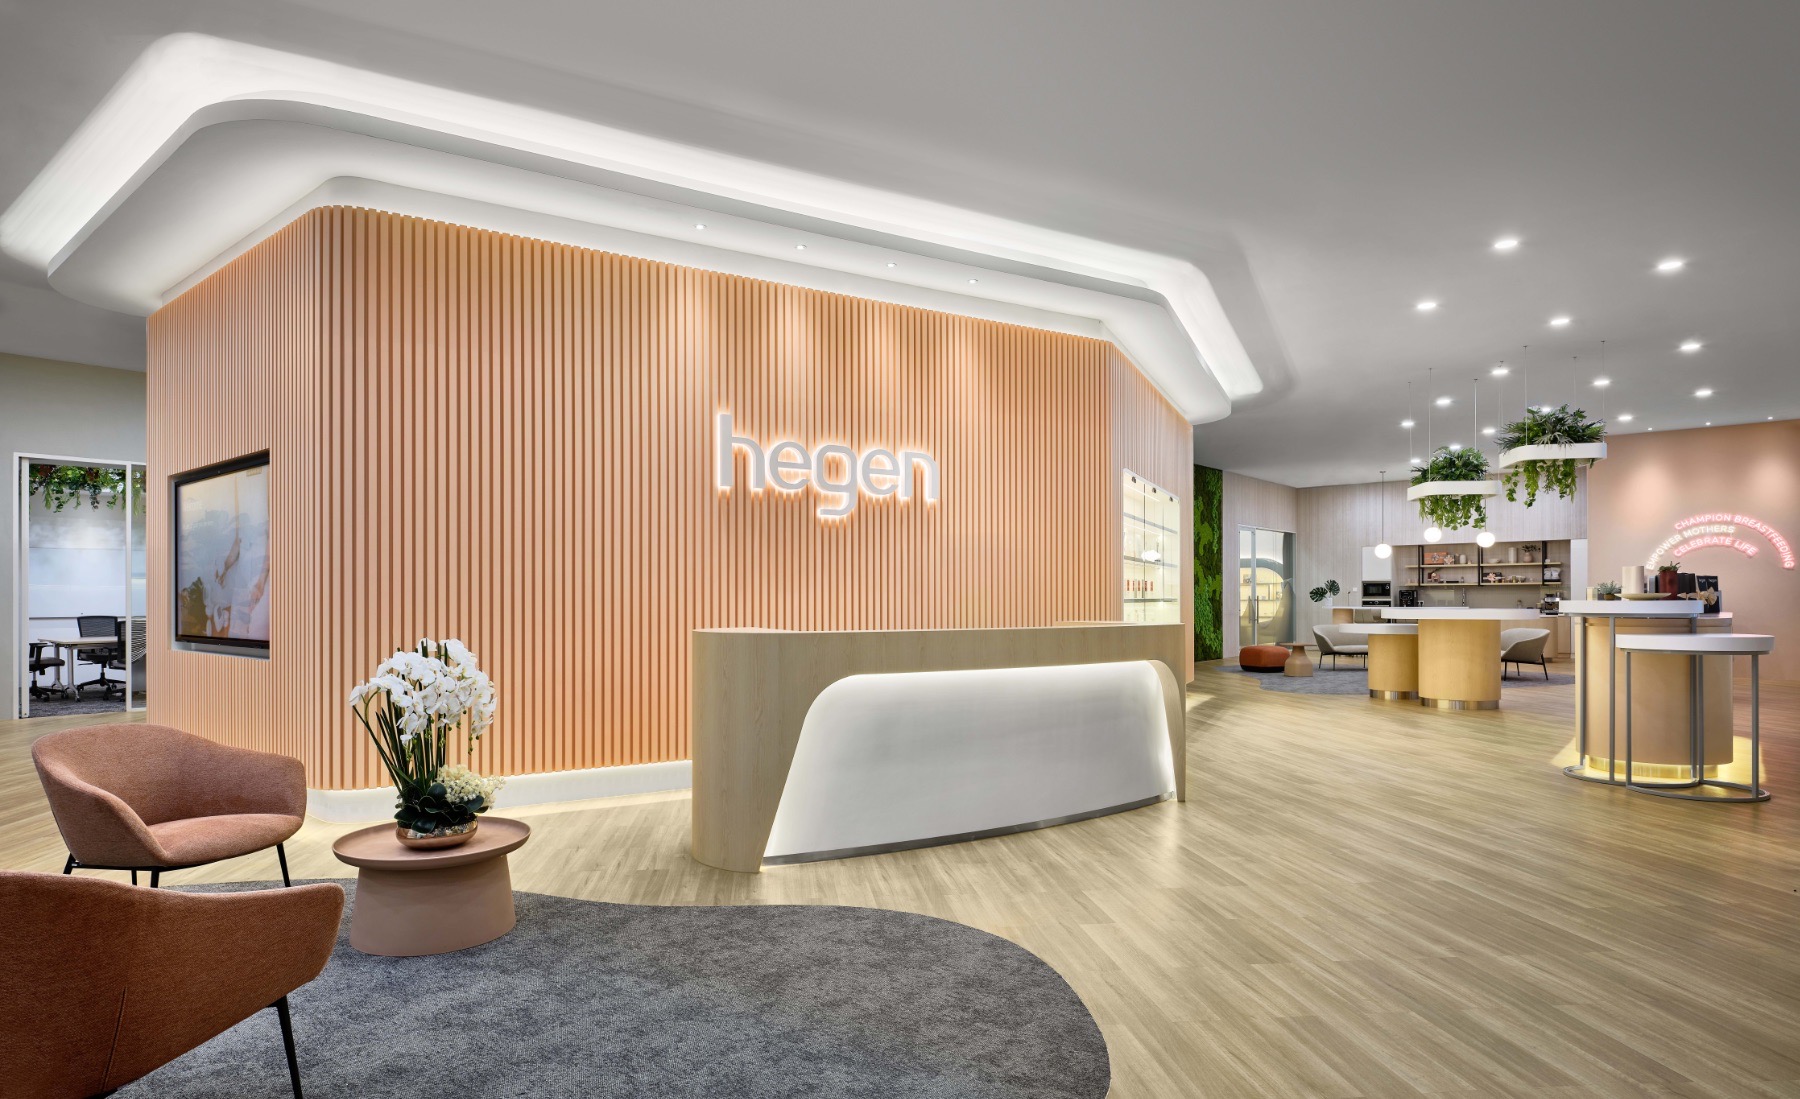 A Look Inside Hegen’s New Singapore Office